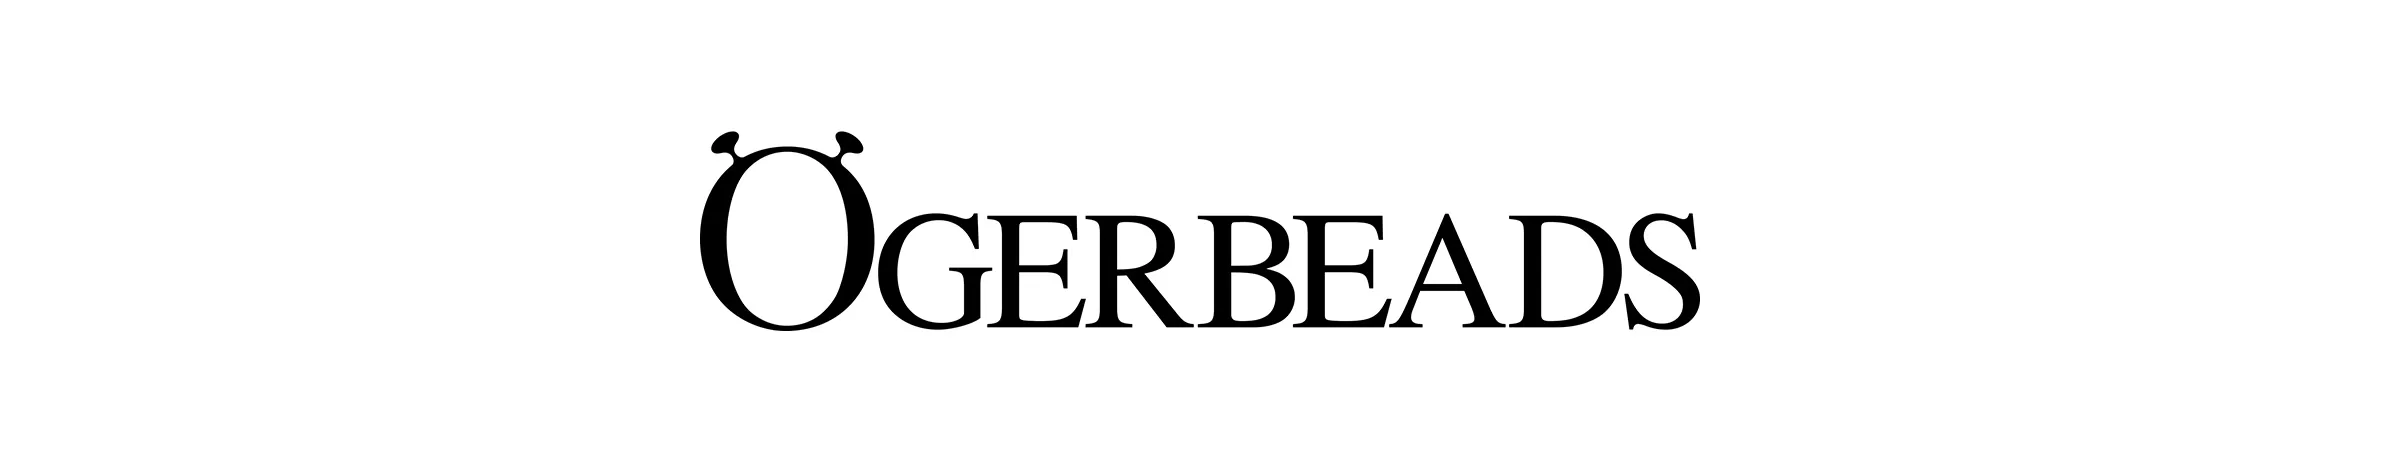 OGERBEADS Logo